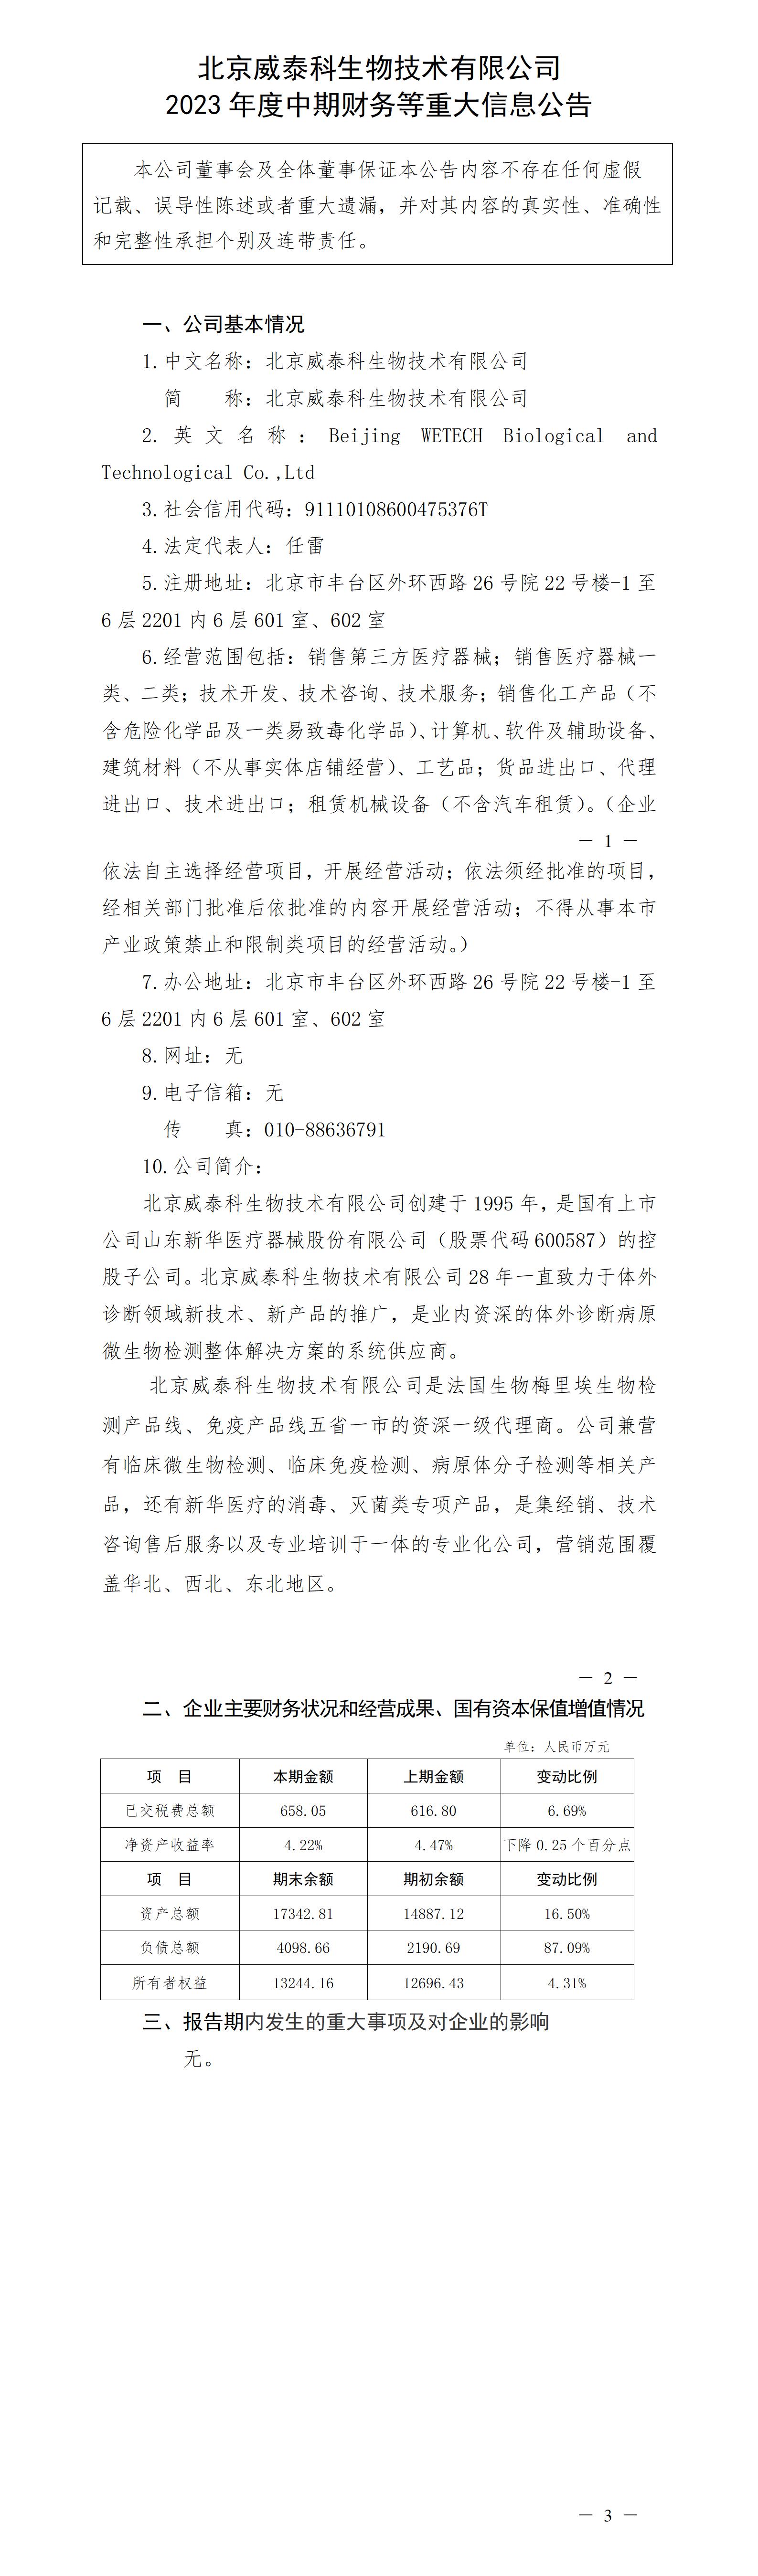 北京威泰科生物技術有限公司2023年度中期財務等重大信息公告_01.jpg